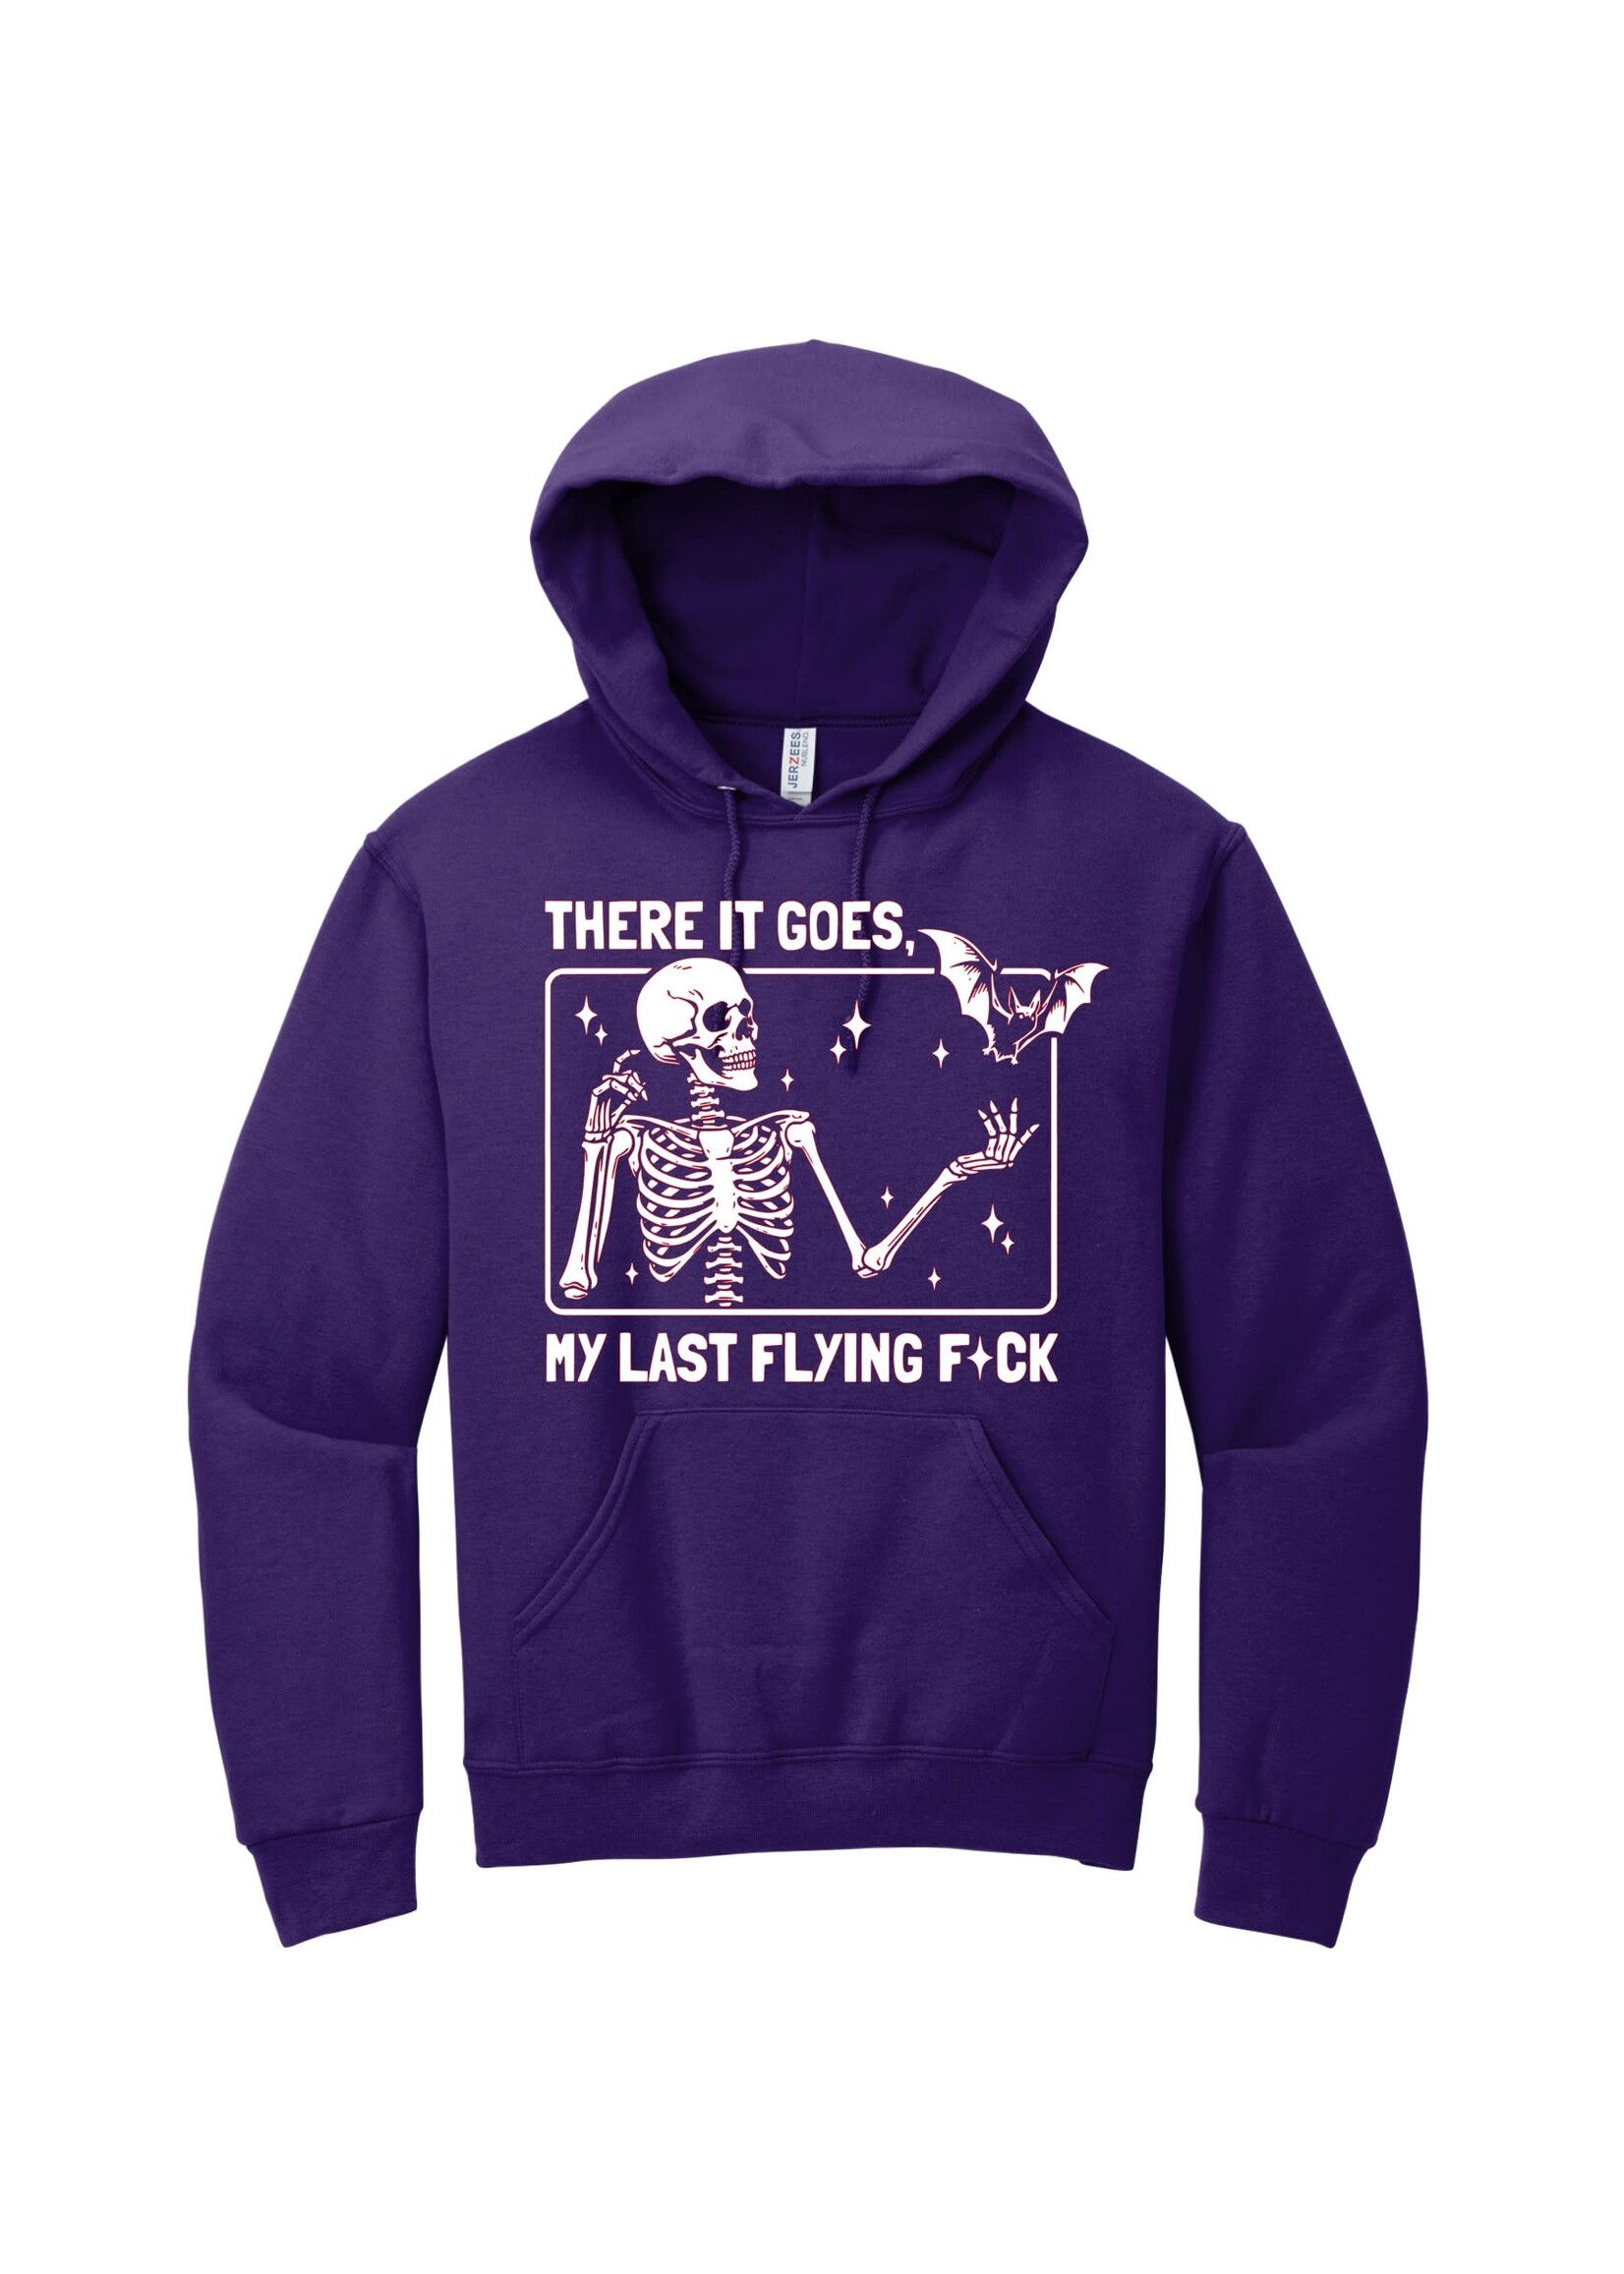 my last flying f*ck hoodie